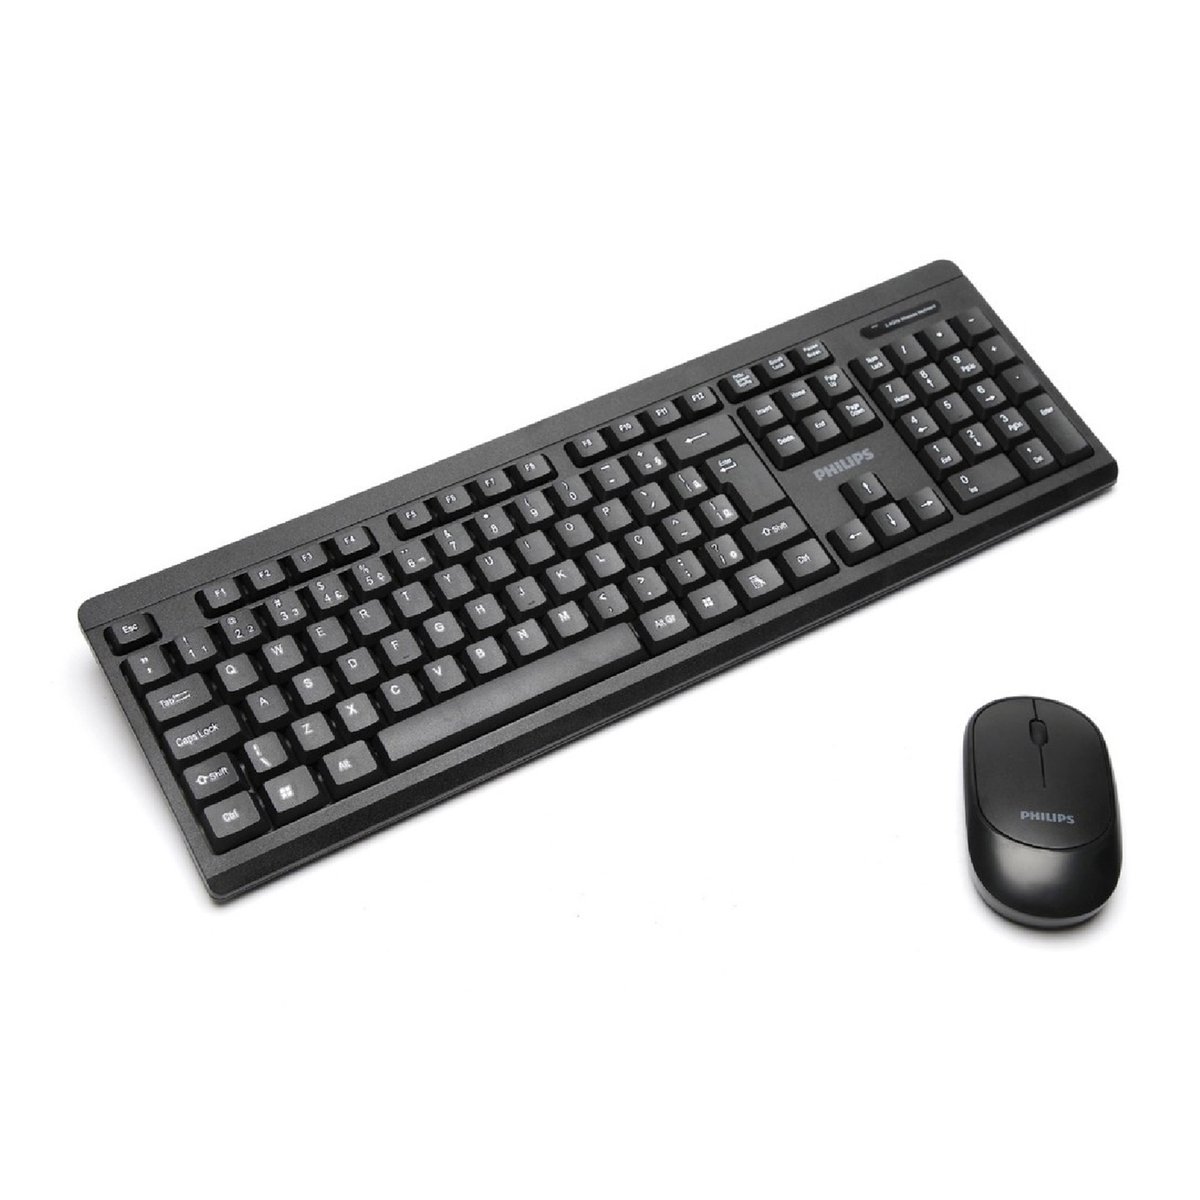 لوحة مفاتيح لا سلكية مع فأرة كومبو من فيليبس بها حساس ضوئي 2.4 جيجا هرتز -- اللون أسود